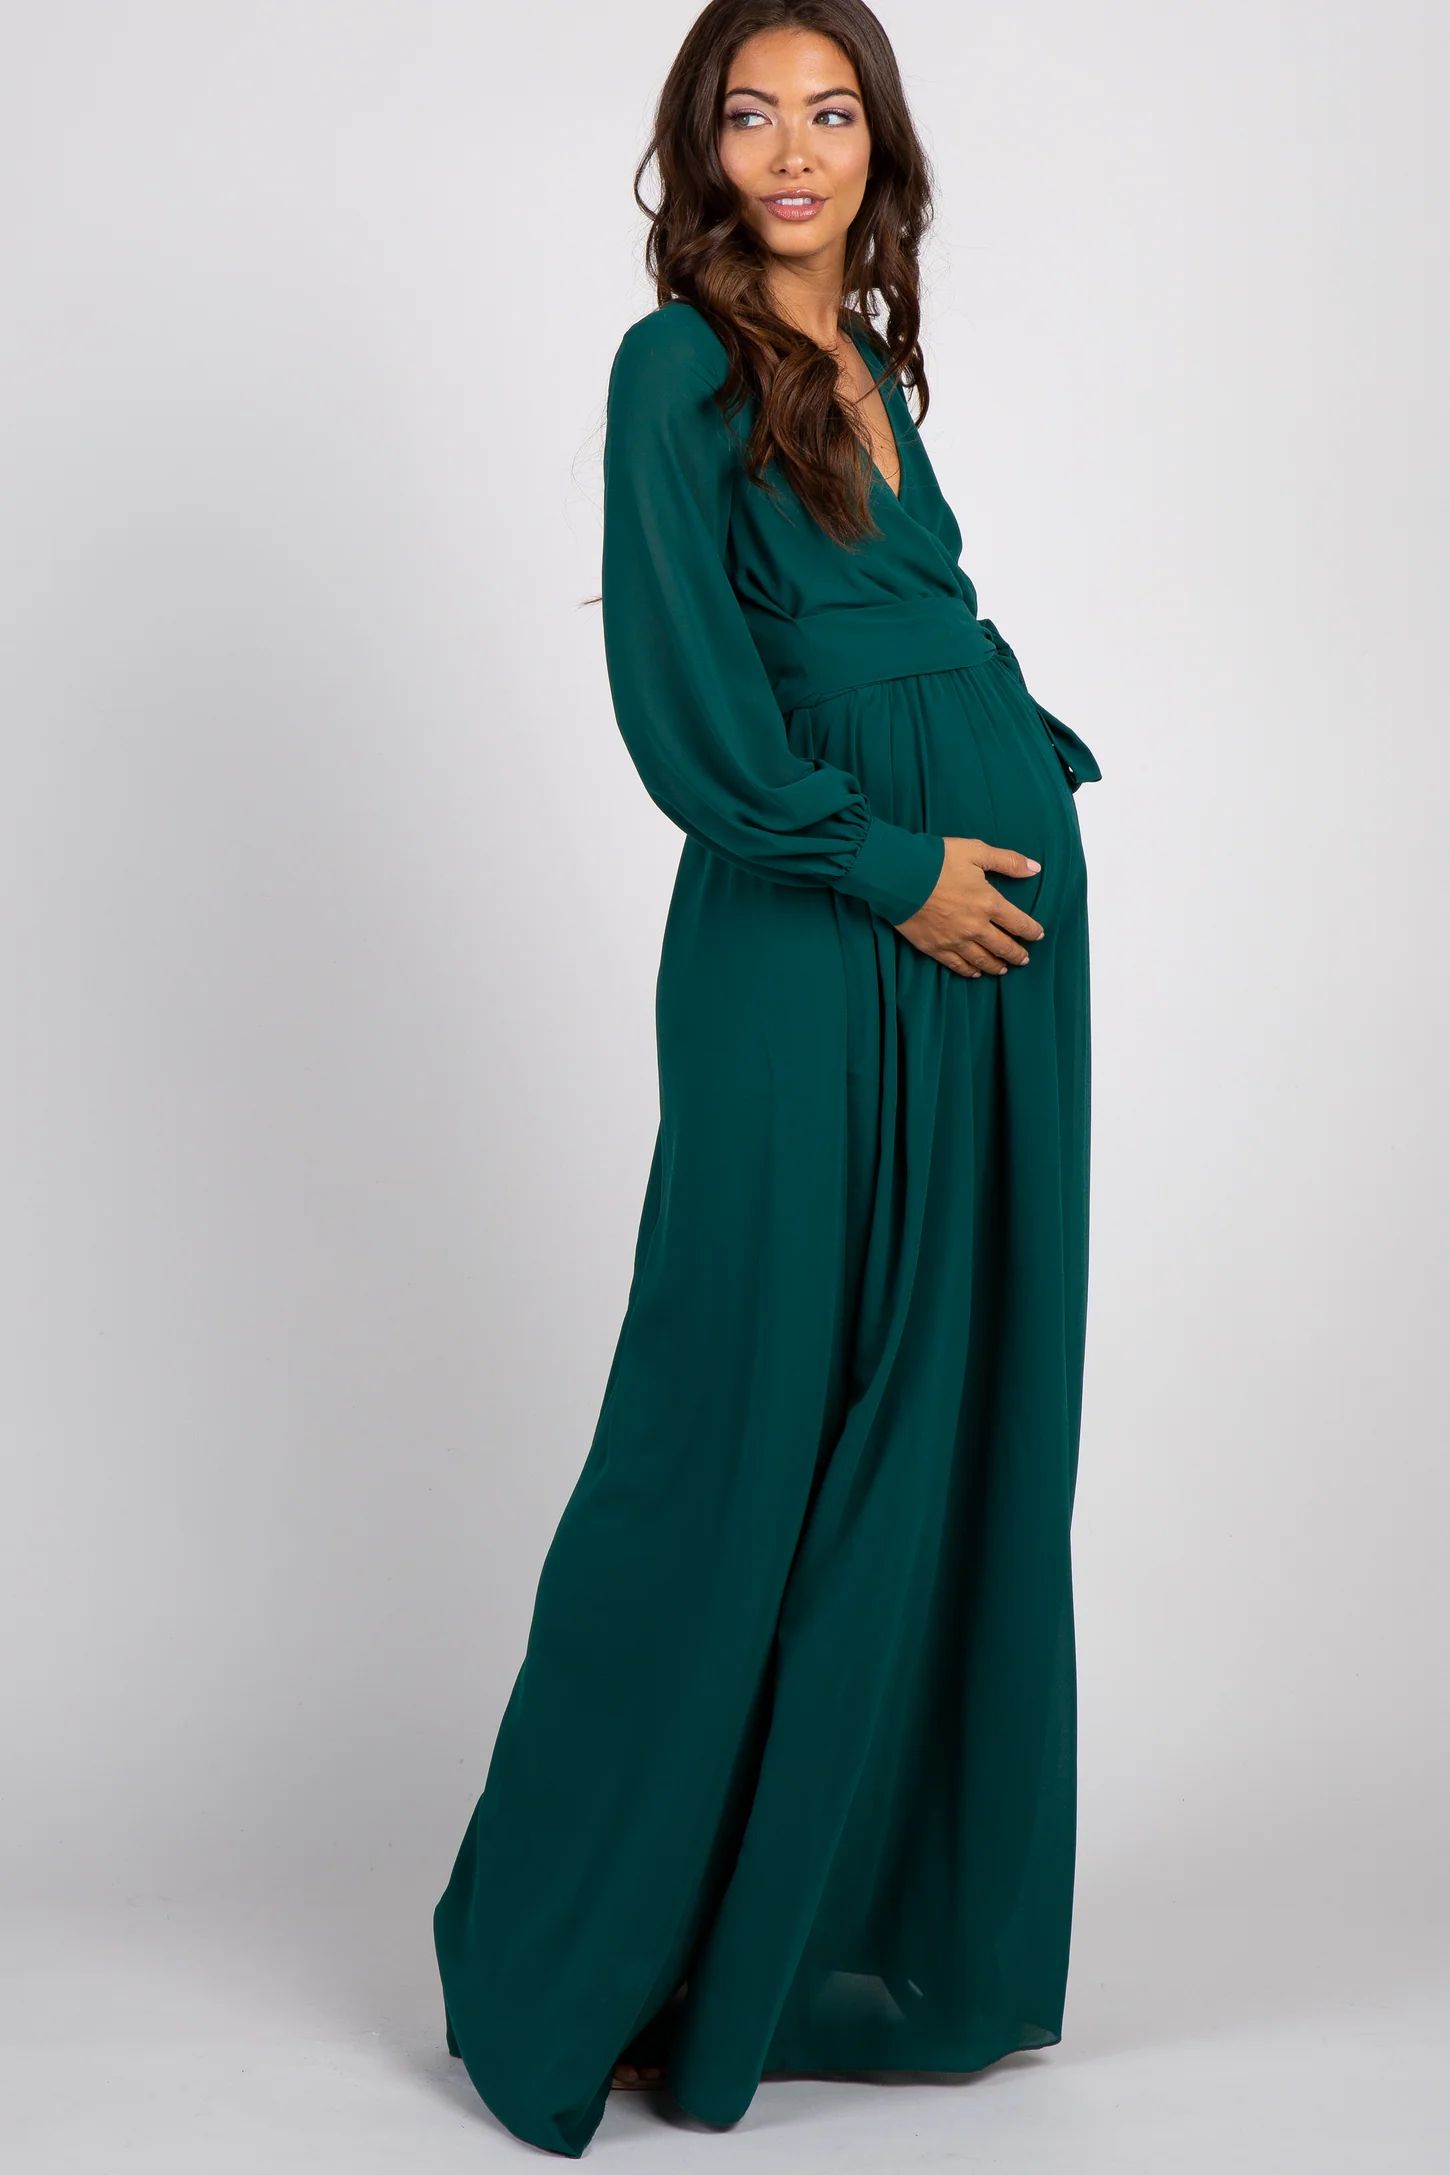 Green Chiffon Long Sleeve Pleated Maternity Maxi Dress | PinkBlush Maternity